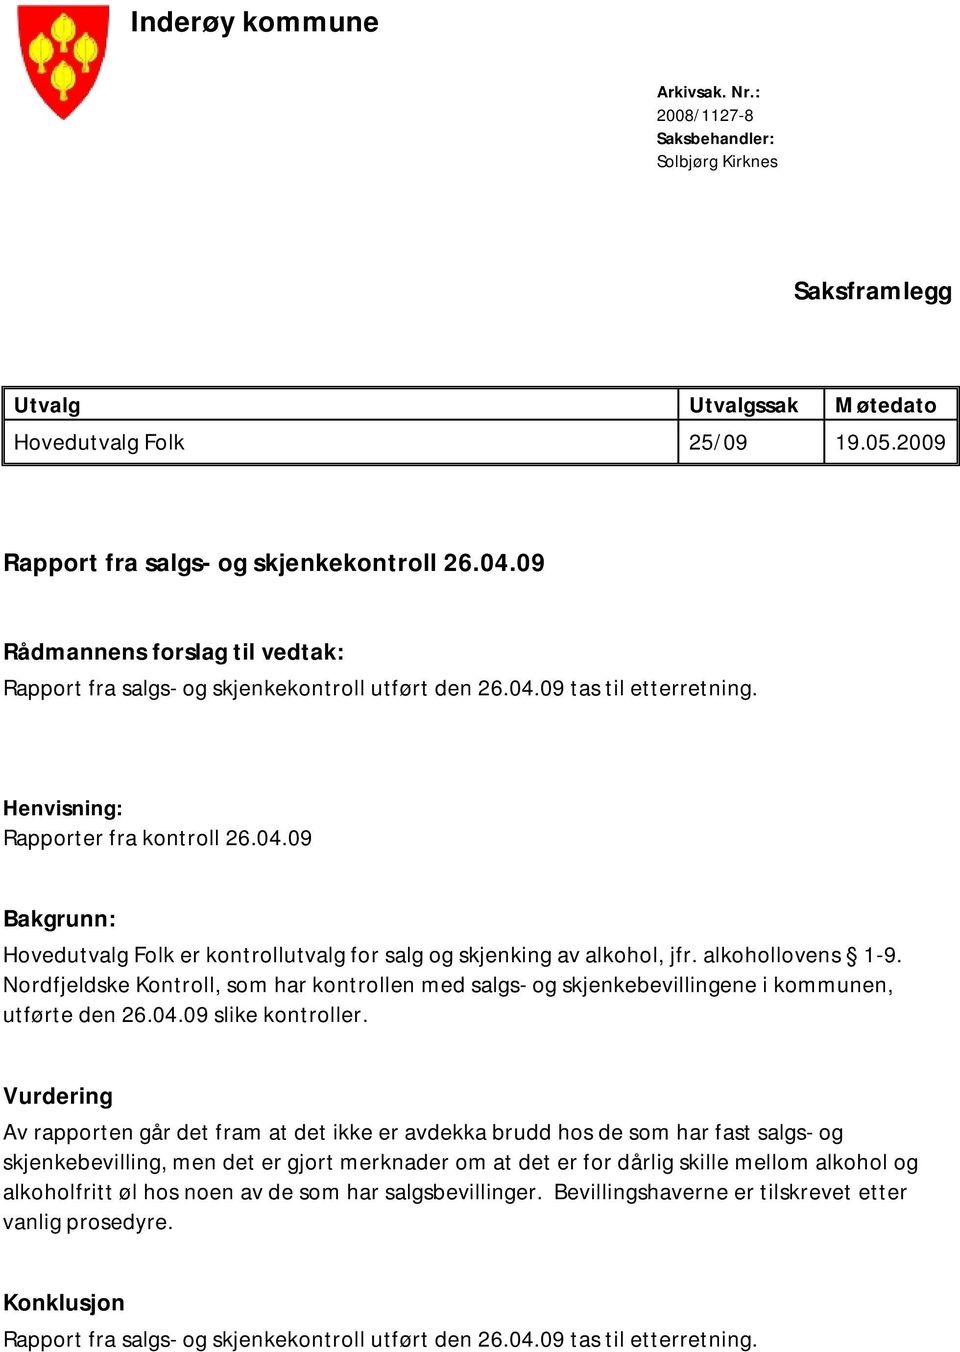 alkohollovens 1-9. Nordfjeldske Kontroll, som har kontrollen med salgs- og skjenkebevillingene i kommunen, utførte den 26.04.09 slike kontroller.